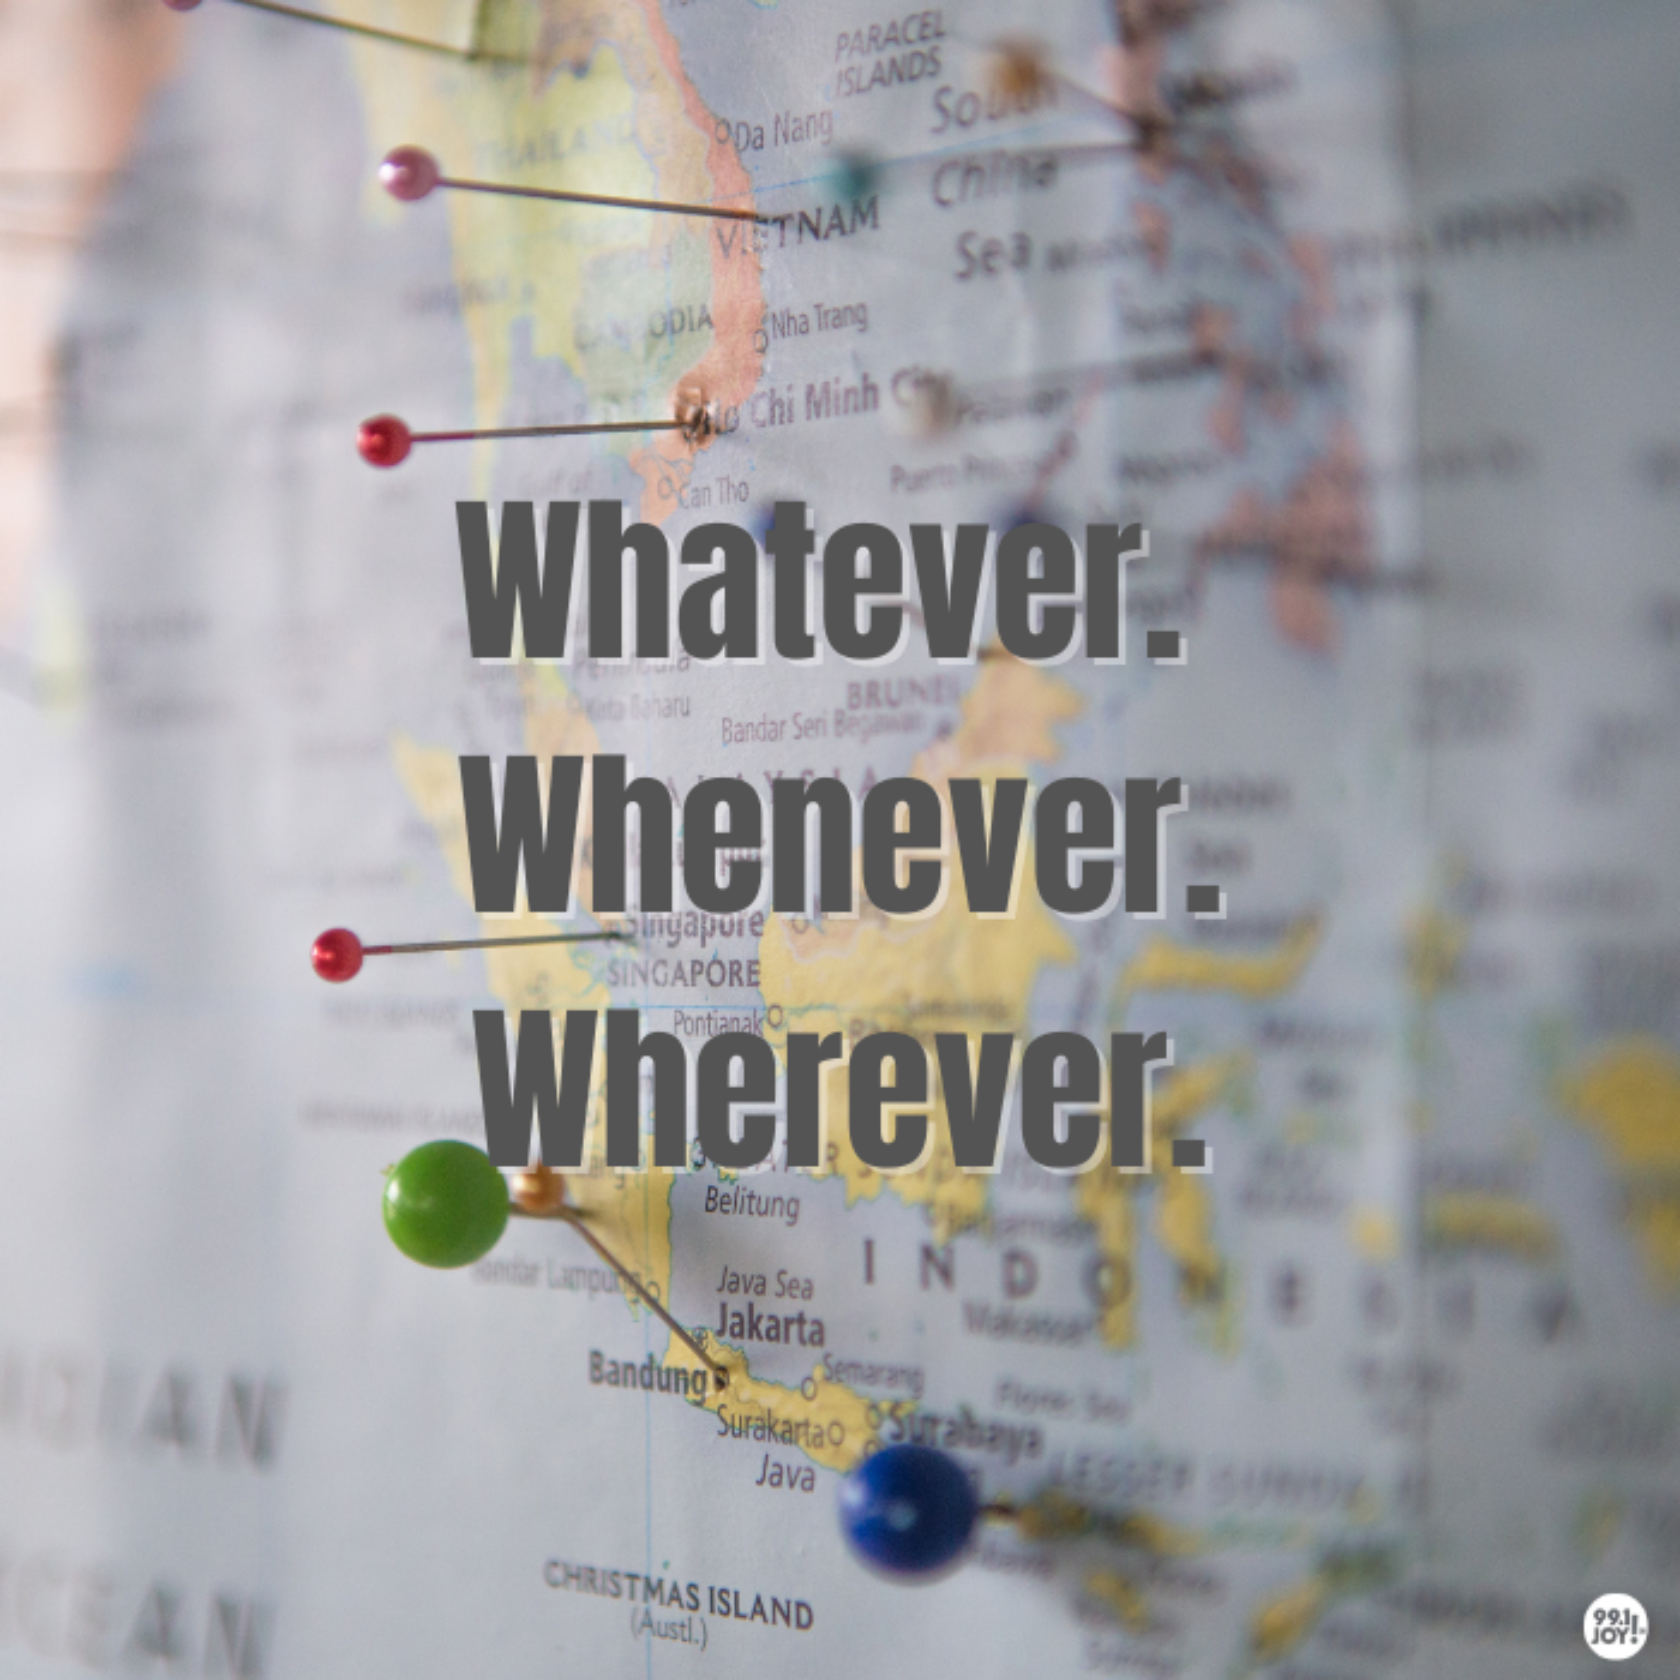 Whatever. Whenever. Wherever.